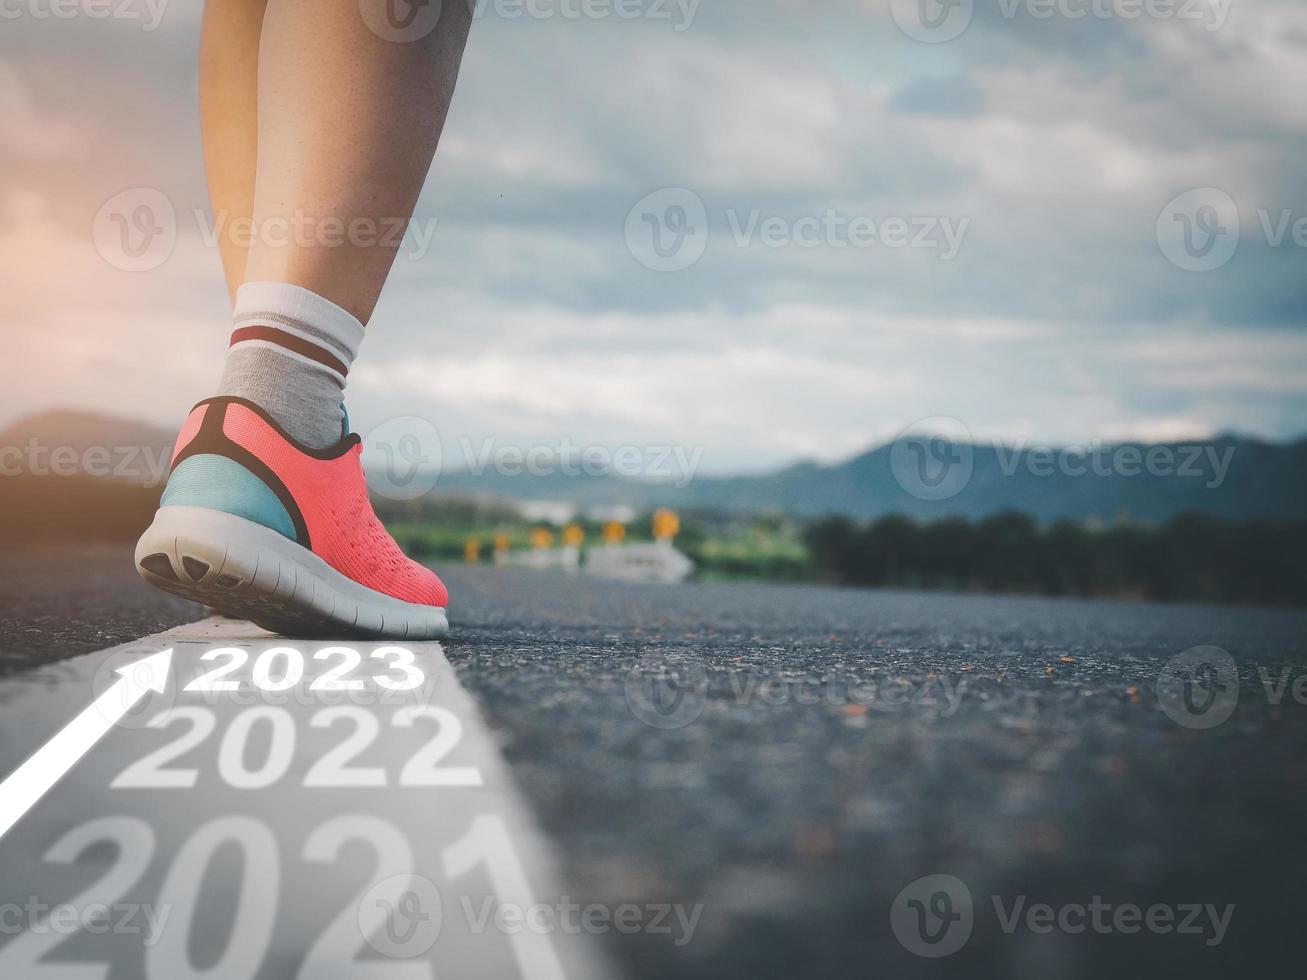 steg in i 2023, kvinna idrottare gående på vit linje på väg med text gående genom varje år och framställning till stiga på de ny år foto